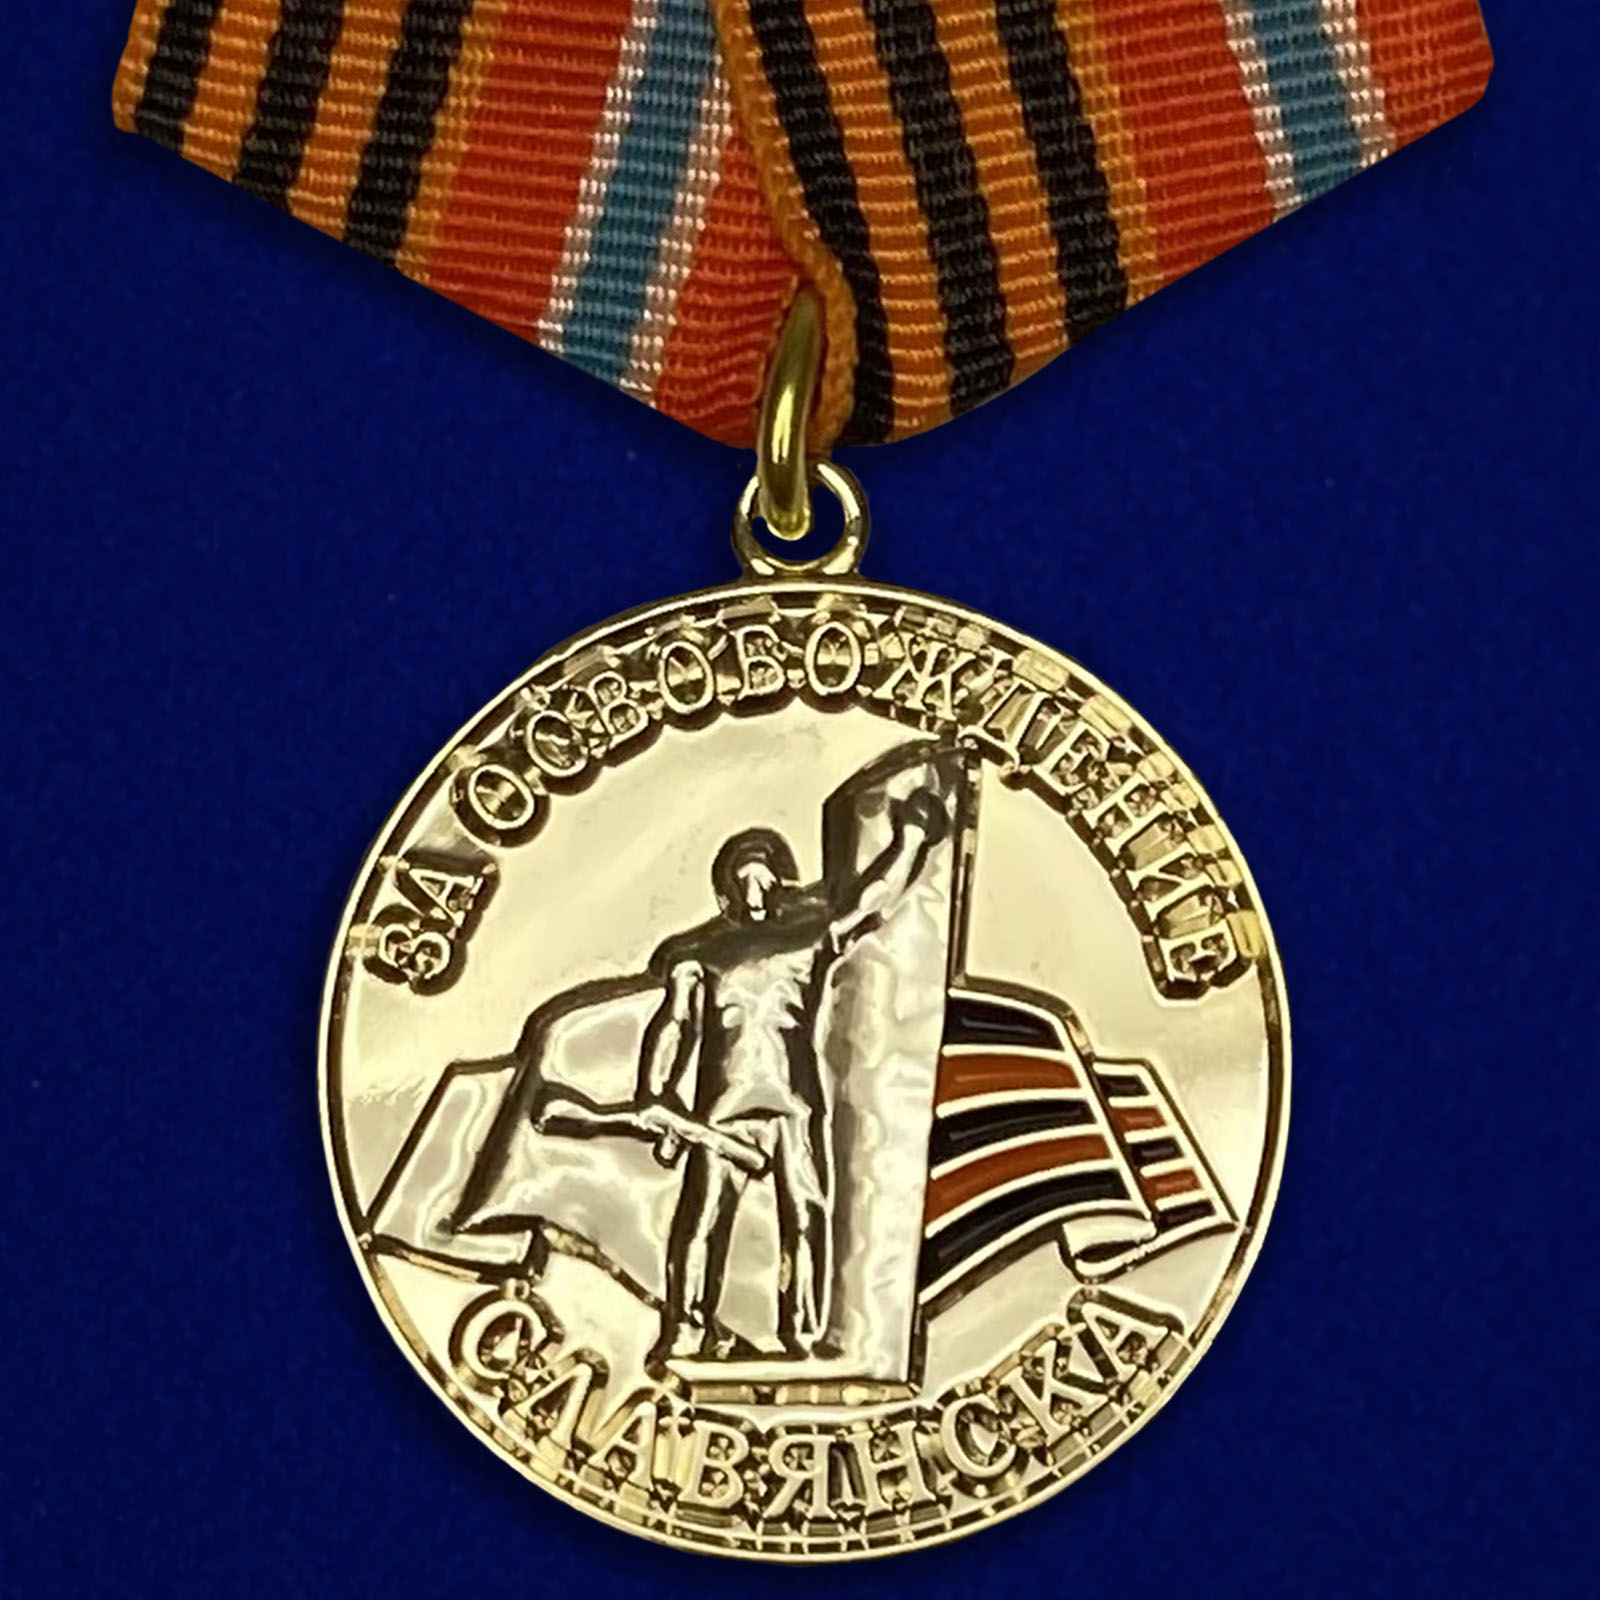 Медаль "За освобождение Славянска"